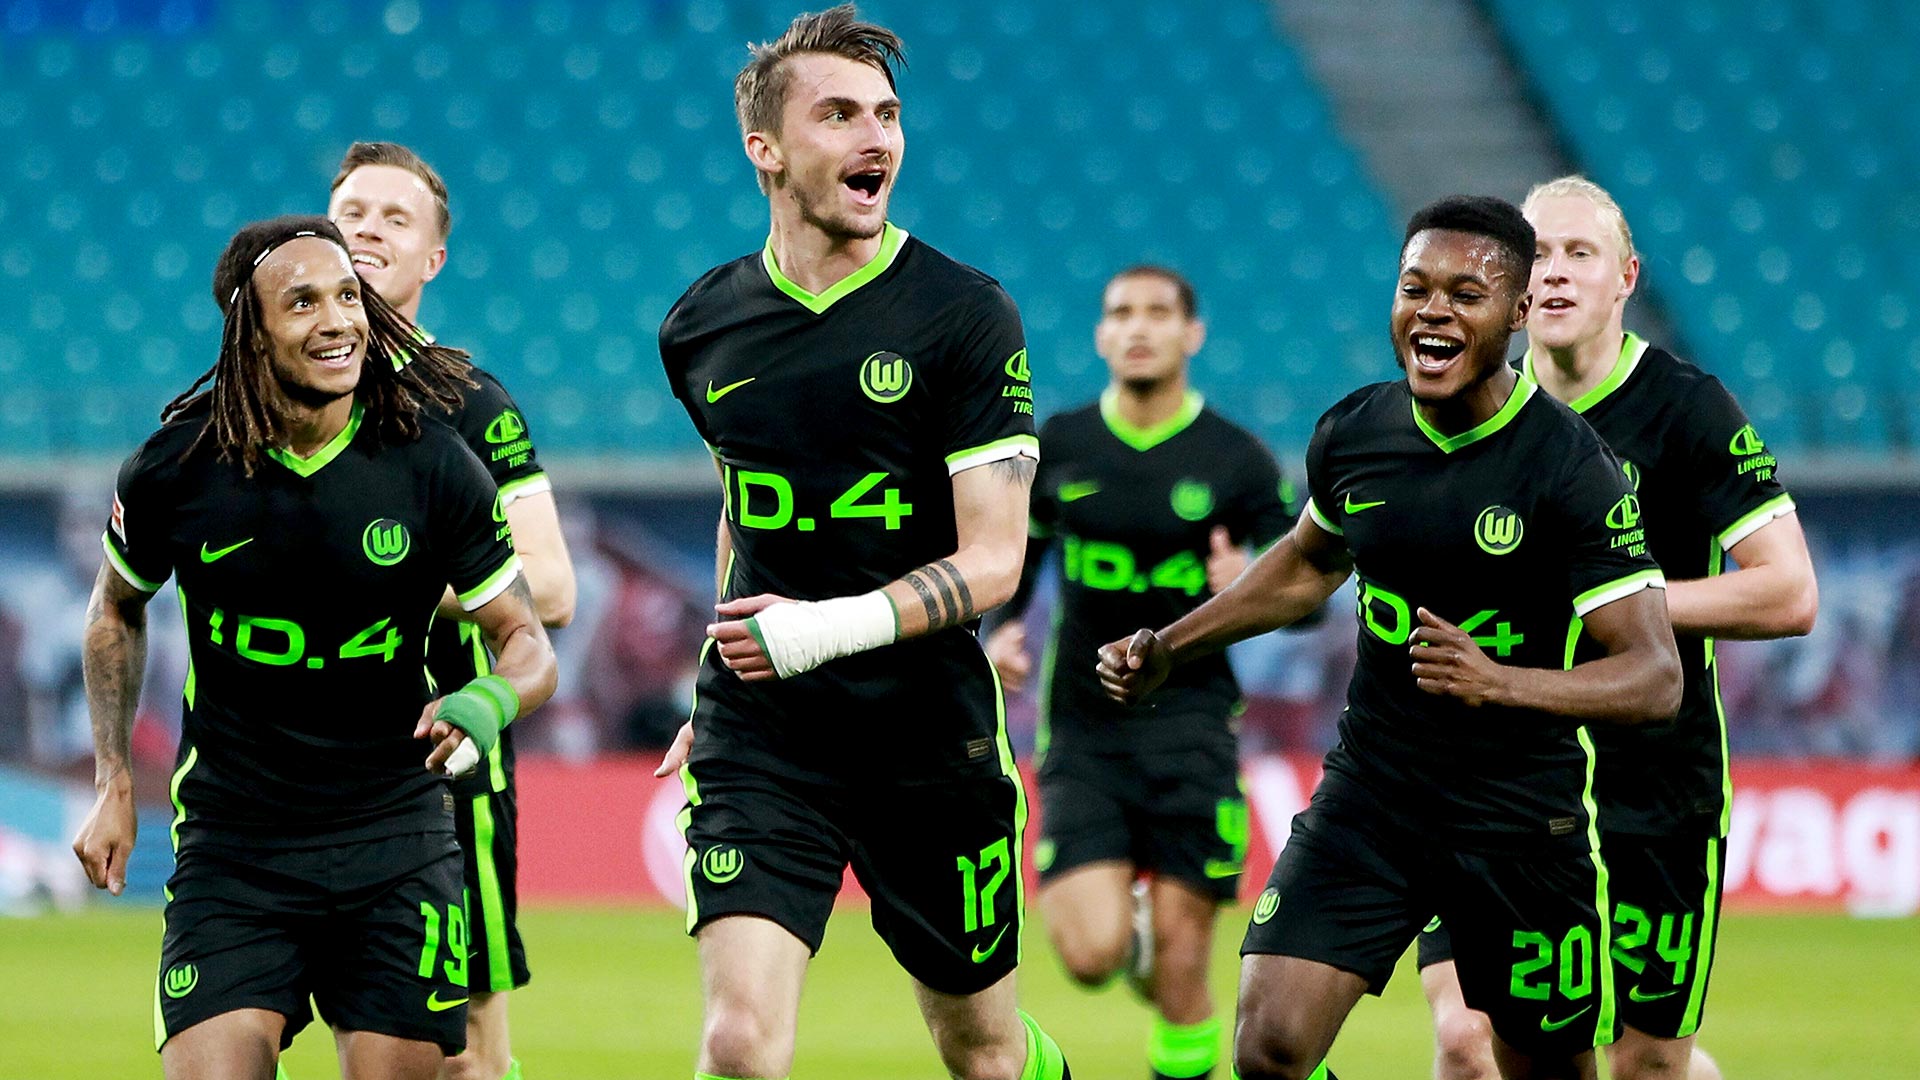 Das Team des VfL Wolfsburg feiert gemeinsam mit dem Torschützen Maximilian Philipp das erzielte Tor.